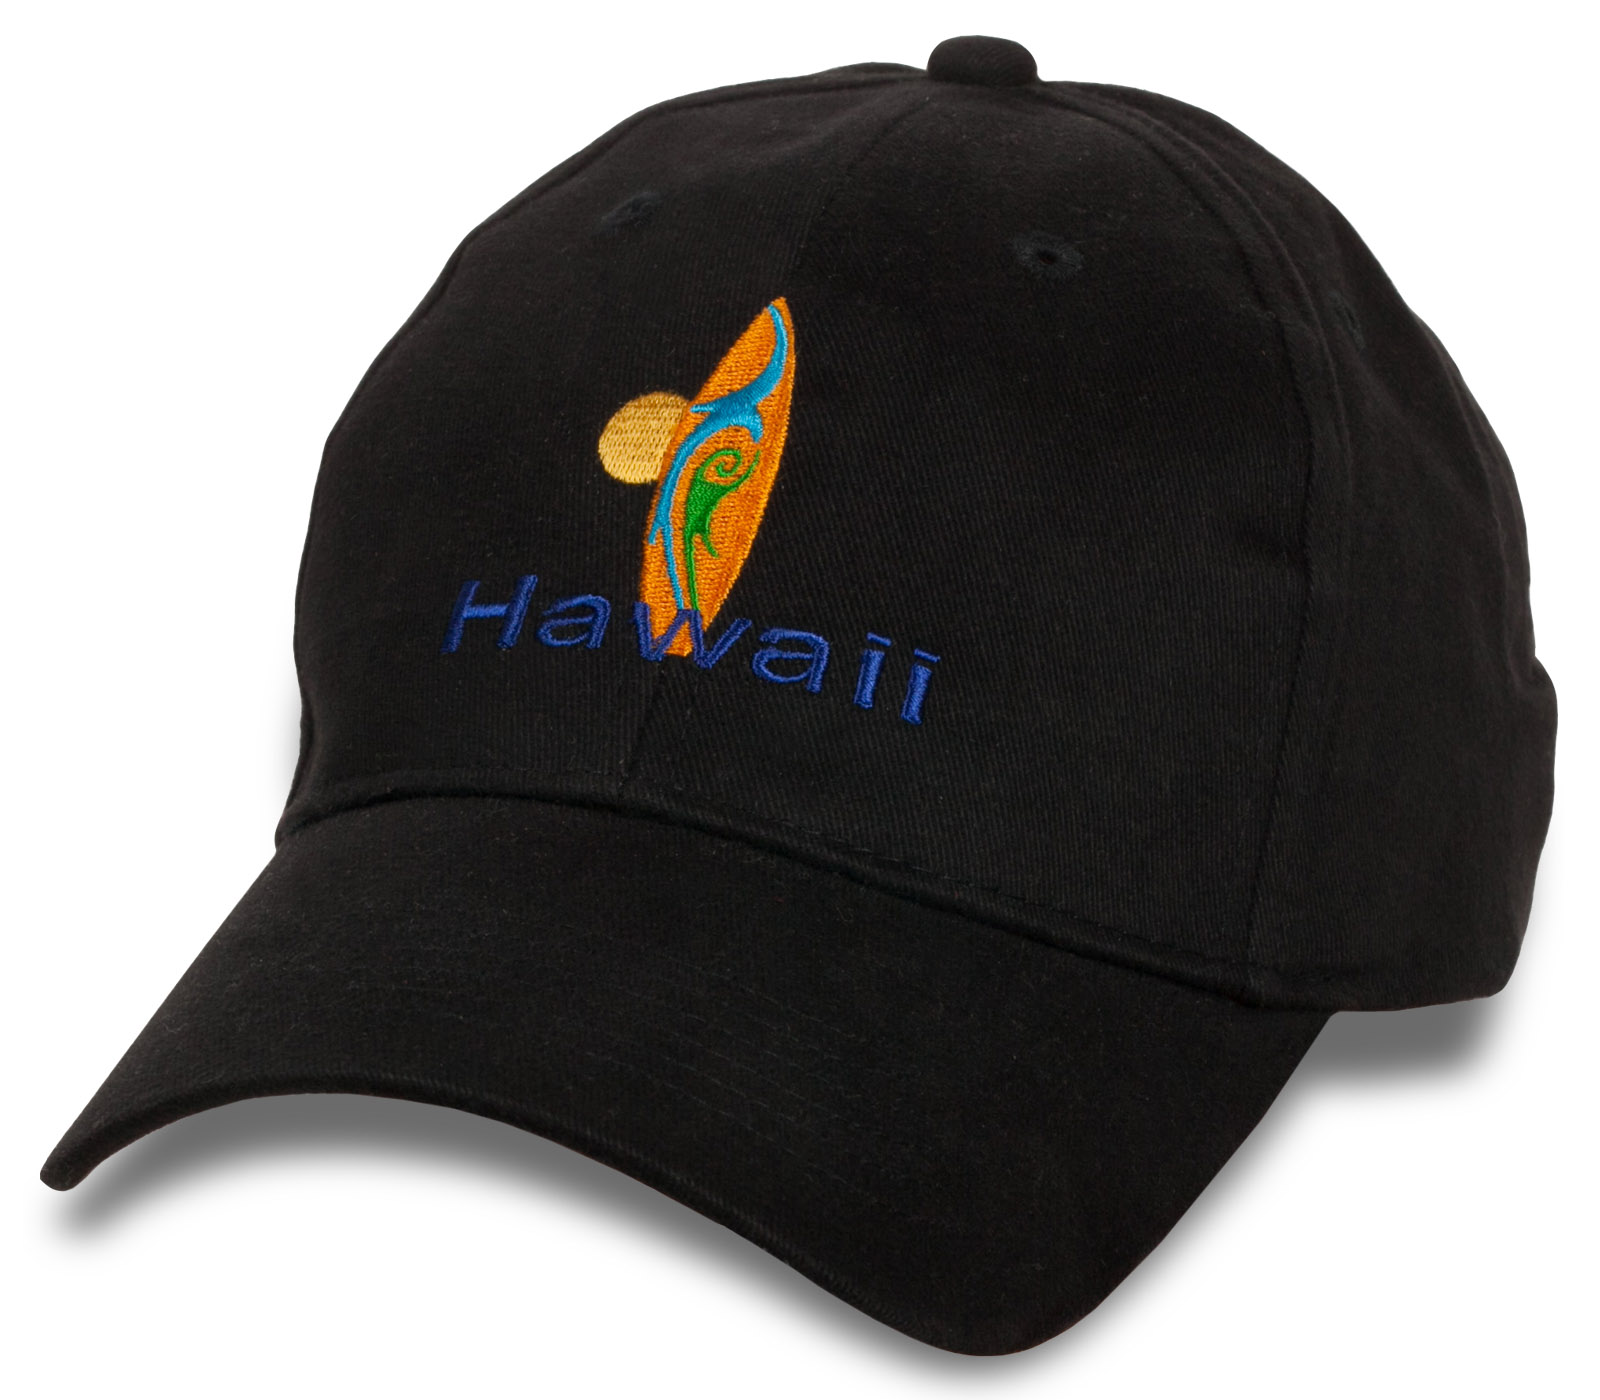 Заказать онлайн недорого бейсболки Hawaii 